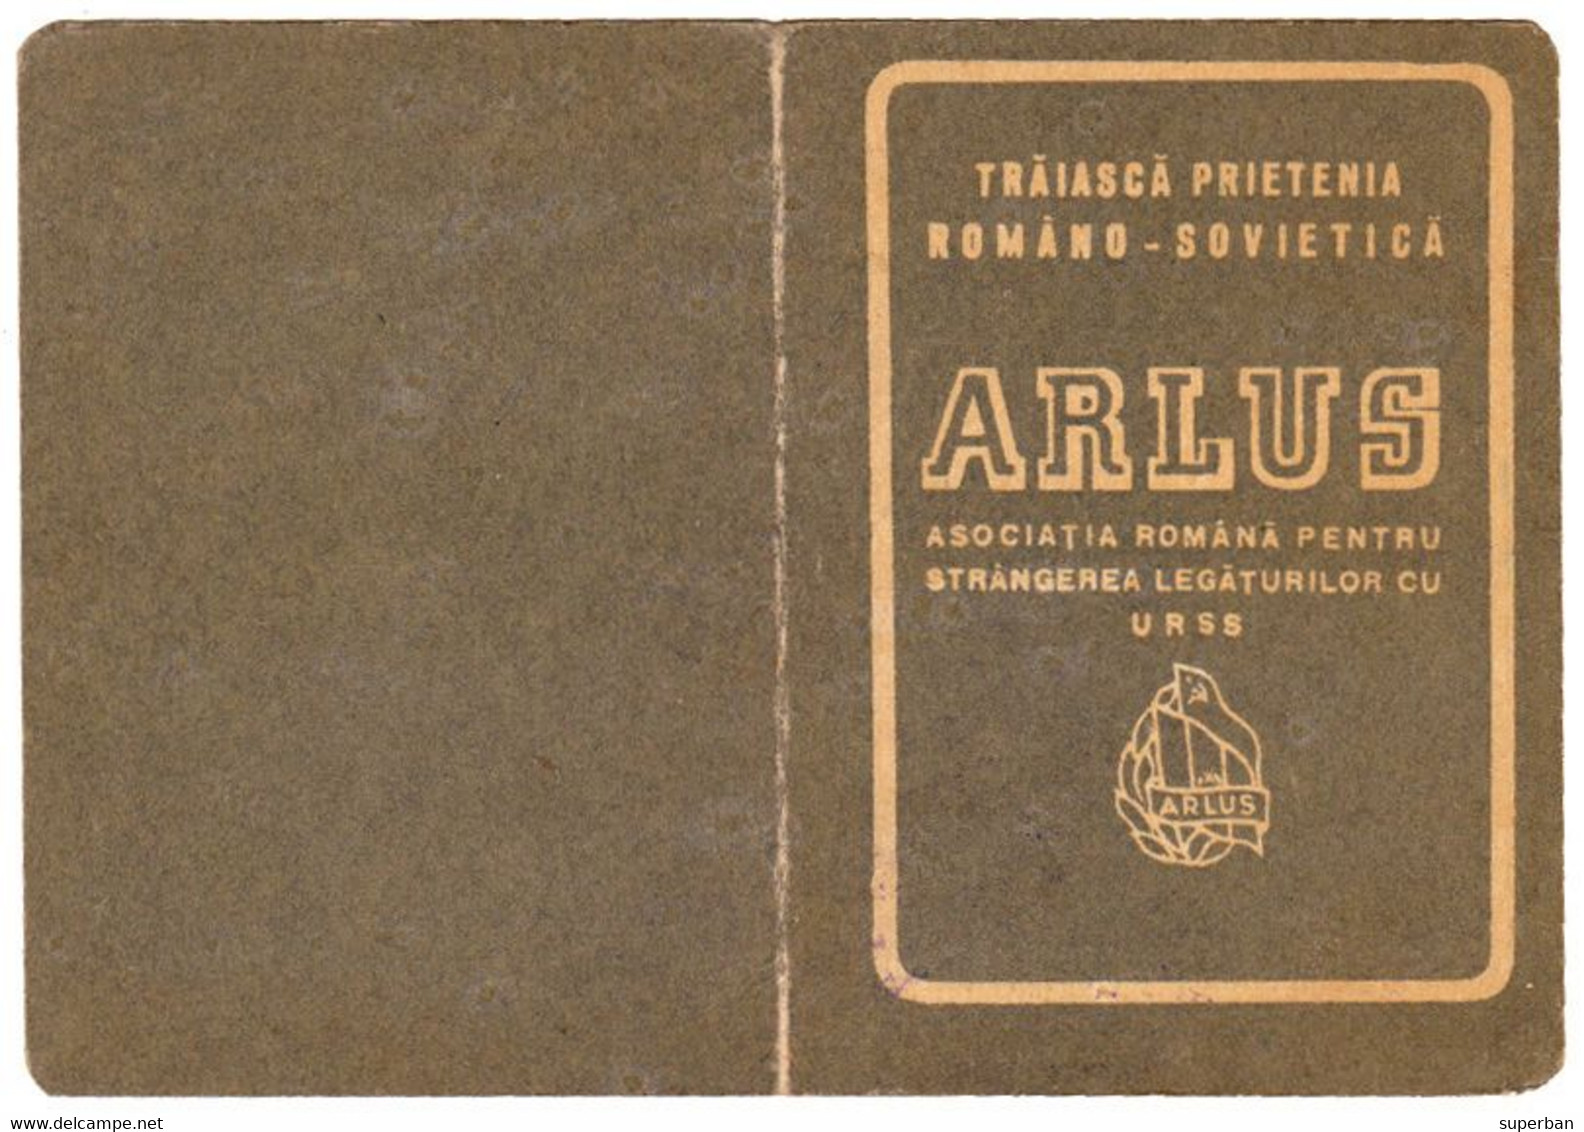 ARLUS / ASOCIAŢIA ROMÂNĂ PENTRU STRÂNGEREA LEGĂTURILOR CU U.R.S.S. - CARNET De MEMBRU - 1950 - CINDERELLA STAMP (aj315) - Fiscale Zegels